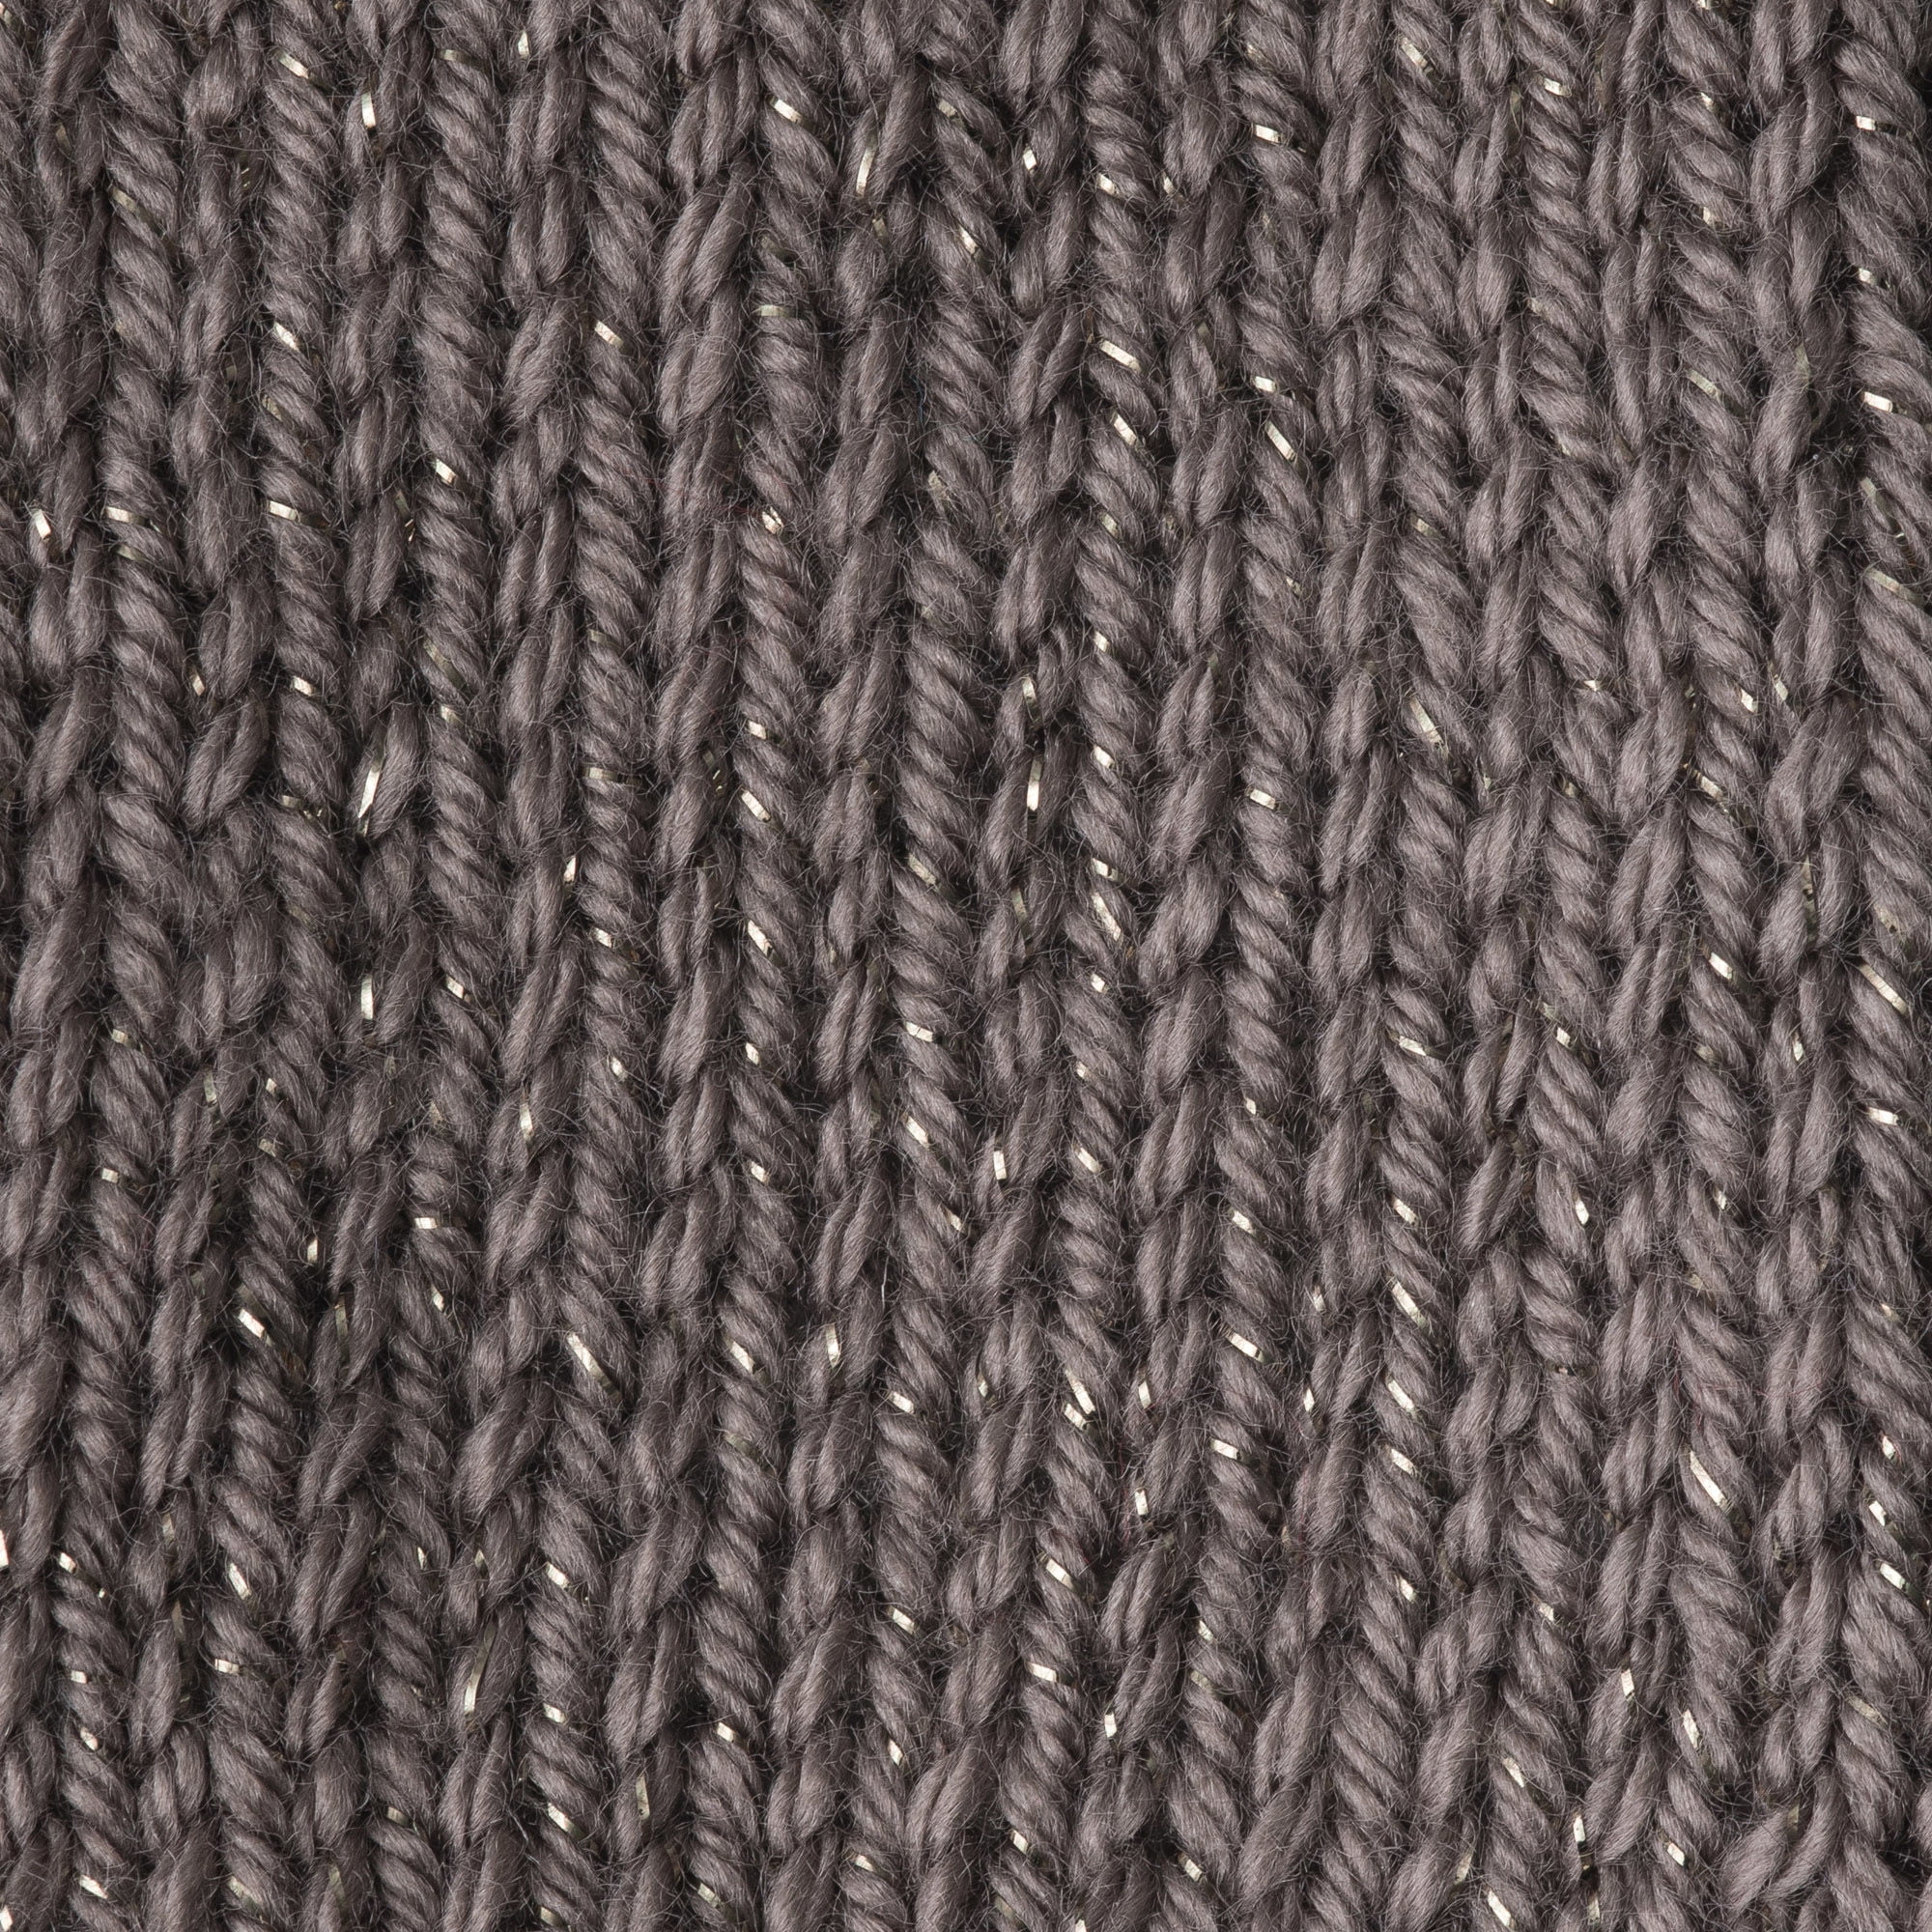 EXCEART Black Yarn Crochet Thread Rainbow Yarn Acrylic Yarn Crochet Yarn  Thick Knitting Yarn Simply Soft Yarn Fuzzy Yarn Super Bulky Yarn White Yarn